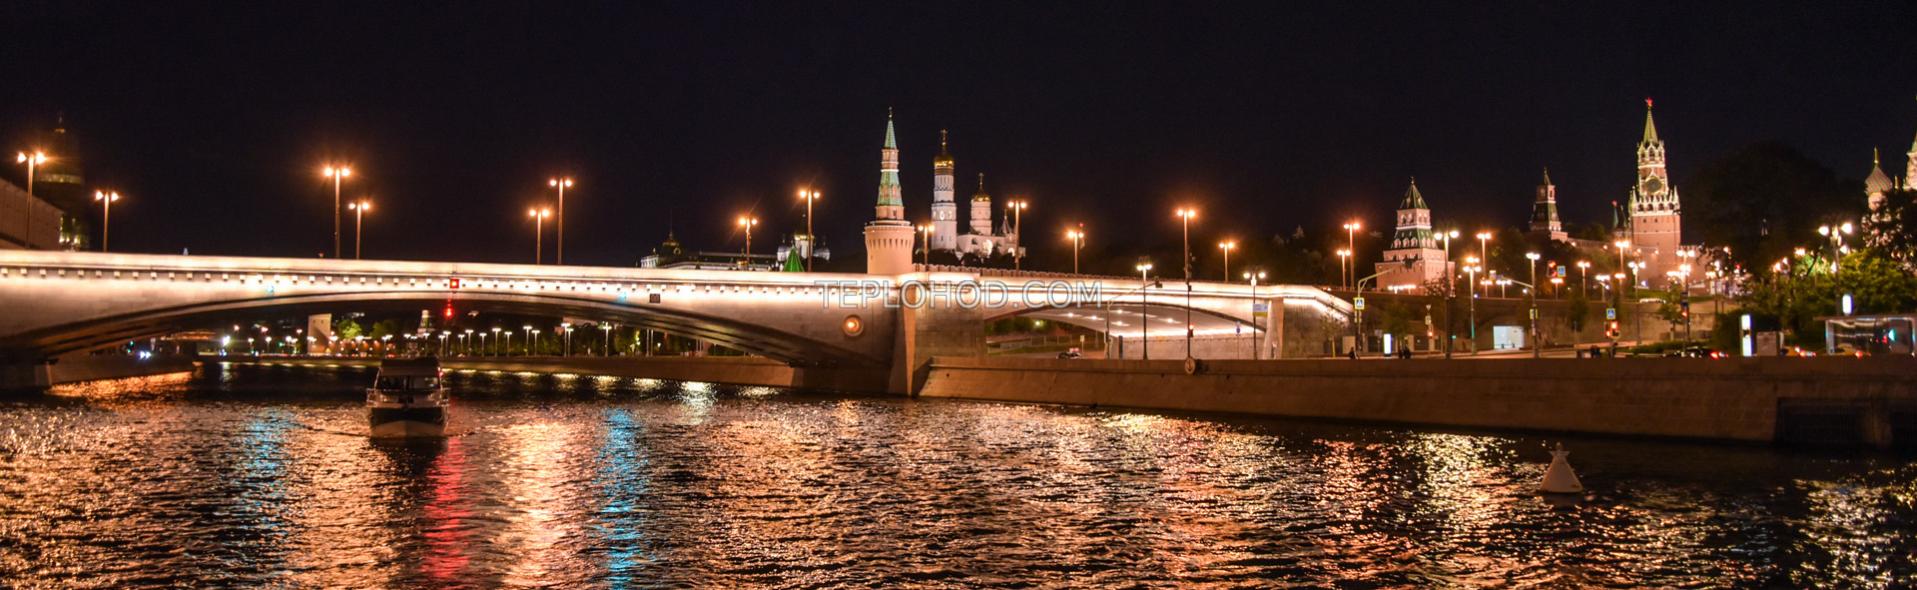 Поэтический вечер "Стихи на воде" с экскурсией, живой музыкой и речной прогулкой по Центру Москвы